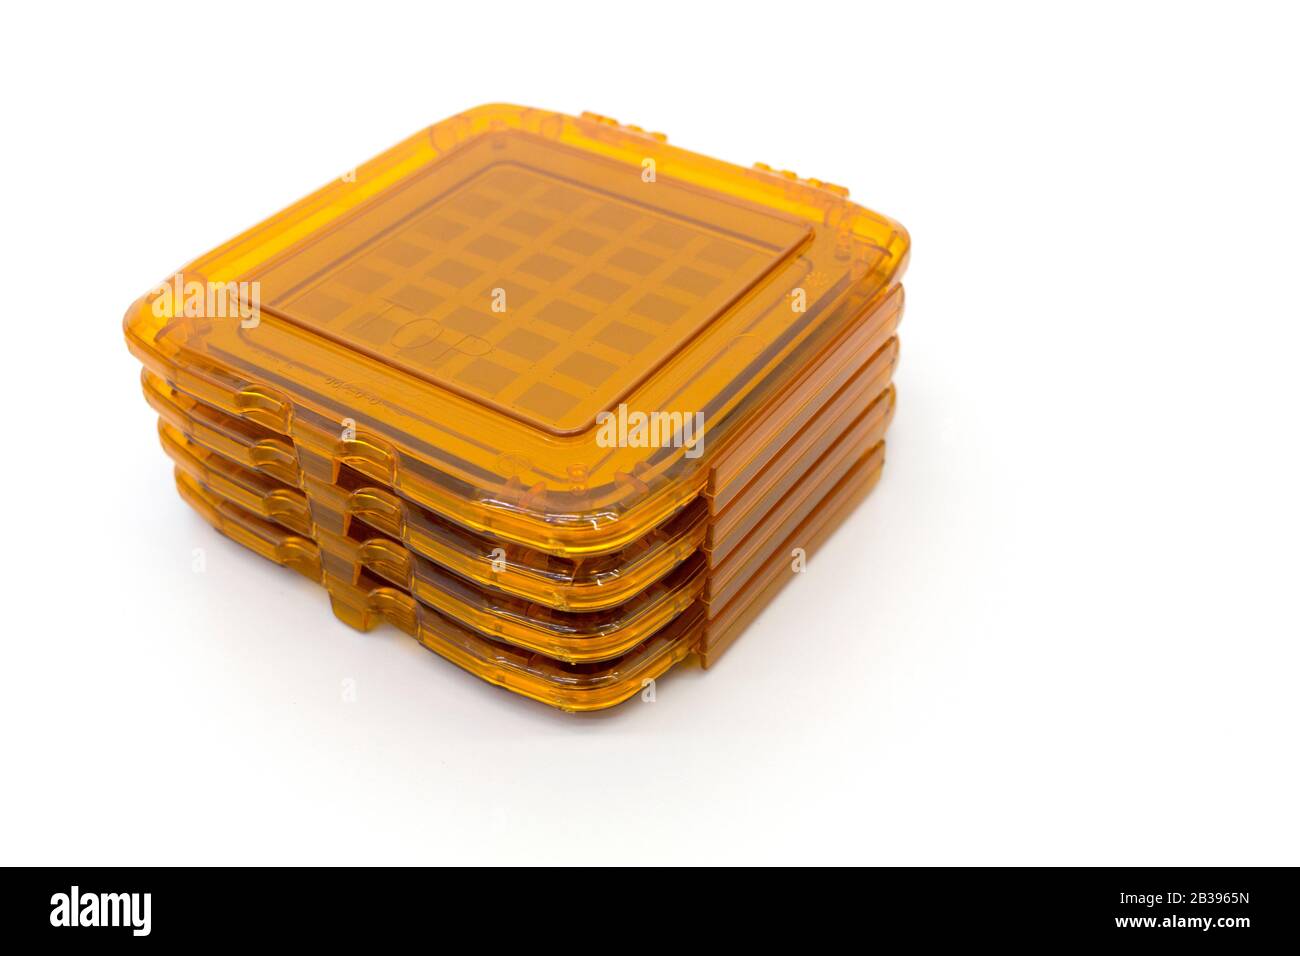 Foto von Fotomasken für die Fotolithografie Verfahren eine orange Boxen Stockfoto